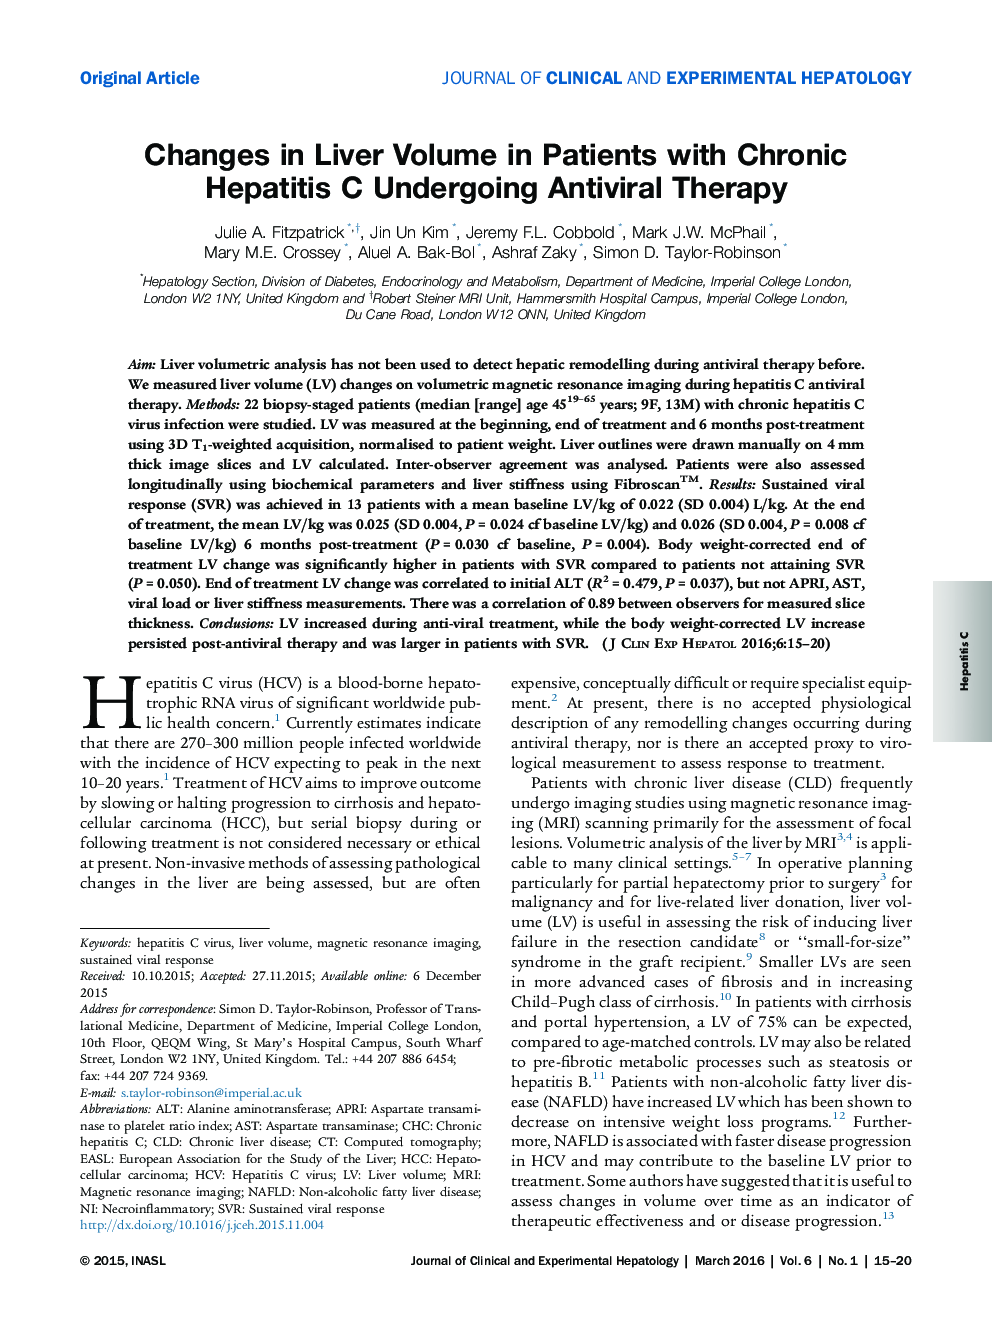 تغییرات در حجم کبد در بیماران مبتلا به هپاتیت مزمن C تحت درمان ضد ویروسی